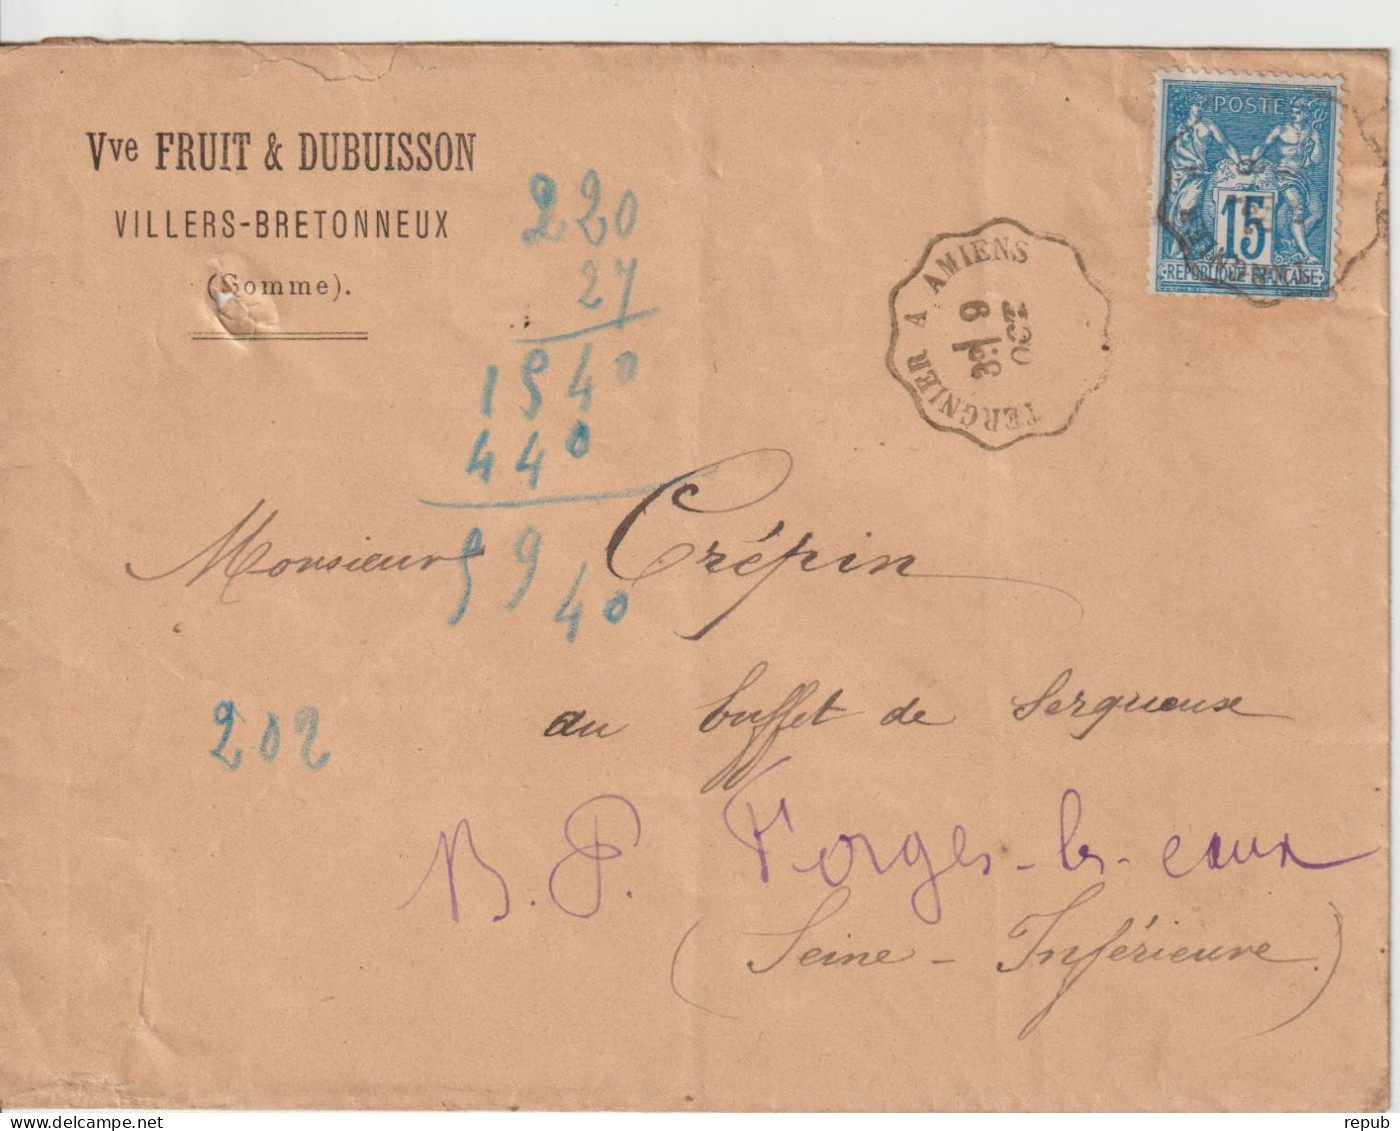 France Oblit Convoyeur Tergnier à Amiens 1881 - 1877-1920: Période Semi Moderne